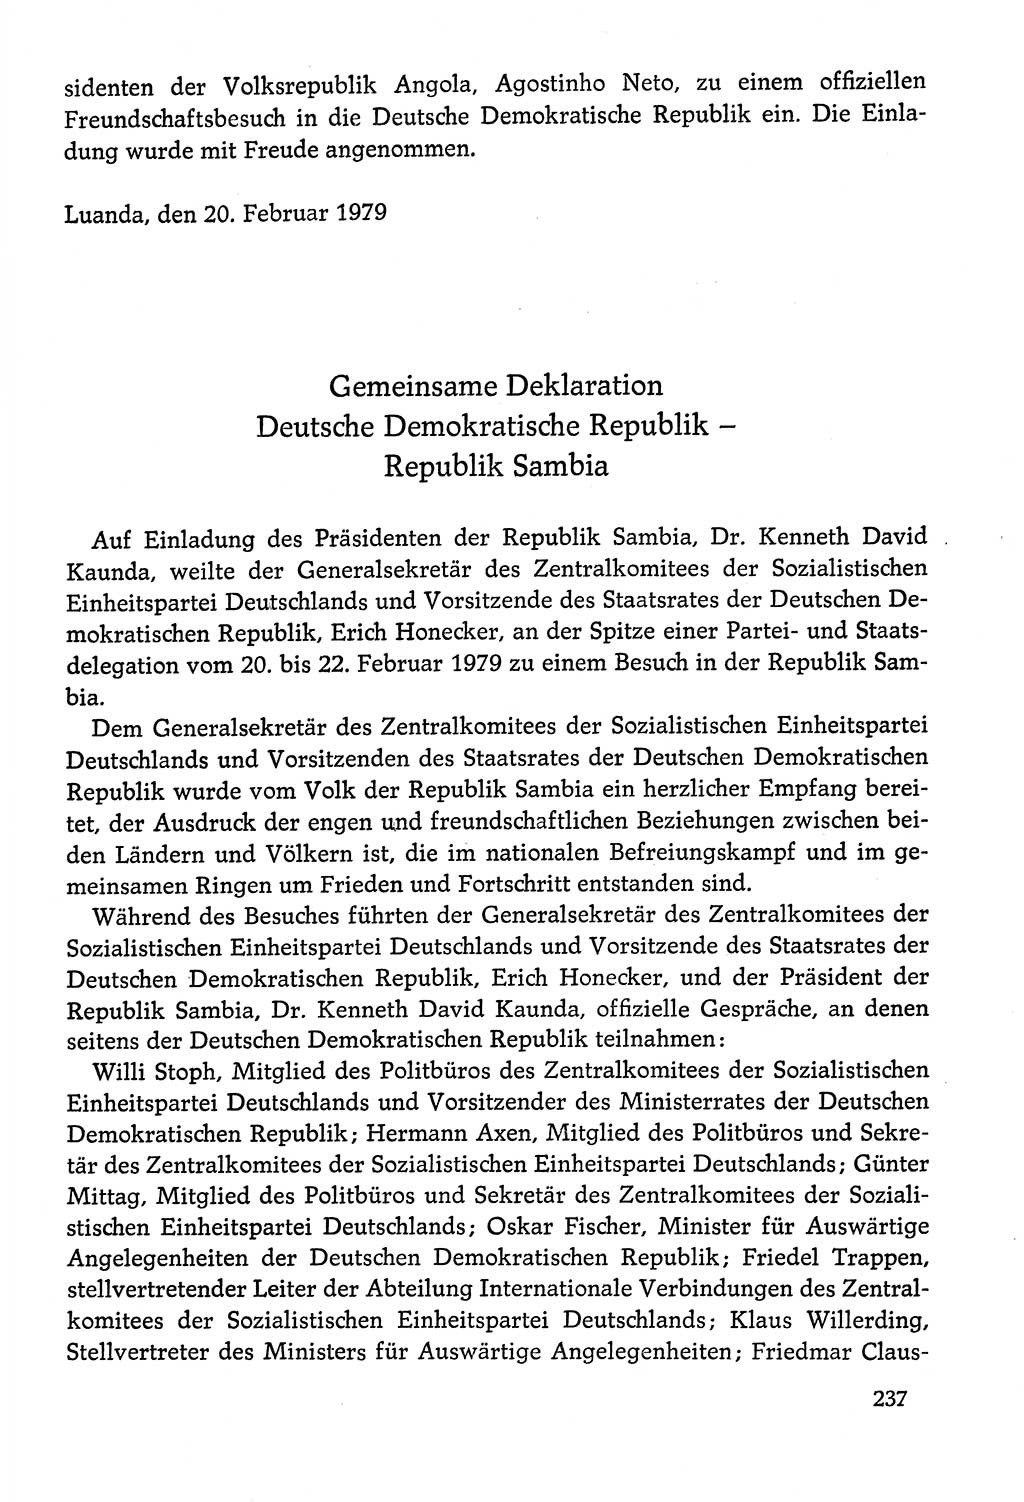 Dokumente der Sozialistischen Einheitspartei Deutschlands (SED) [Deutsche Demokratische Republik (DDR)] 1978-1979, Seite 237 (Dok. SED DDR 1978-1979, S. 237)